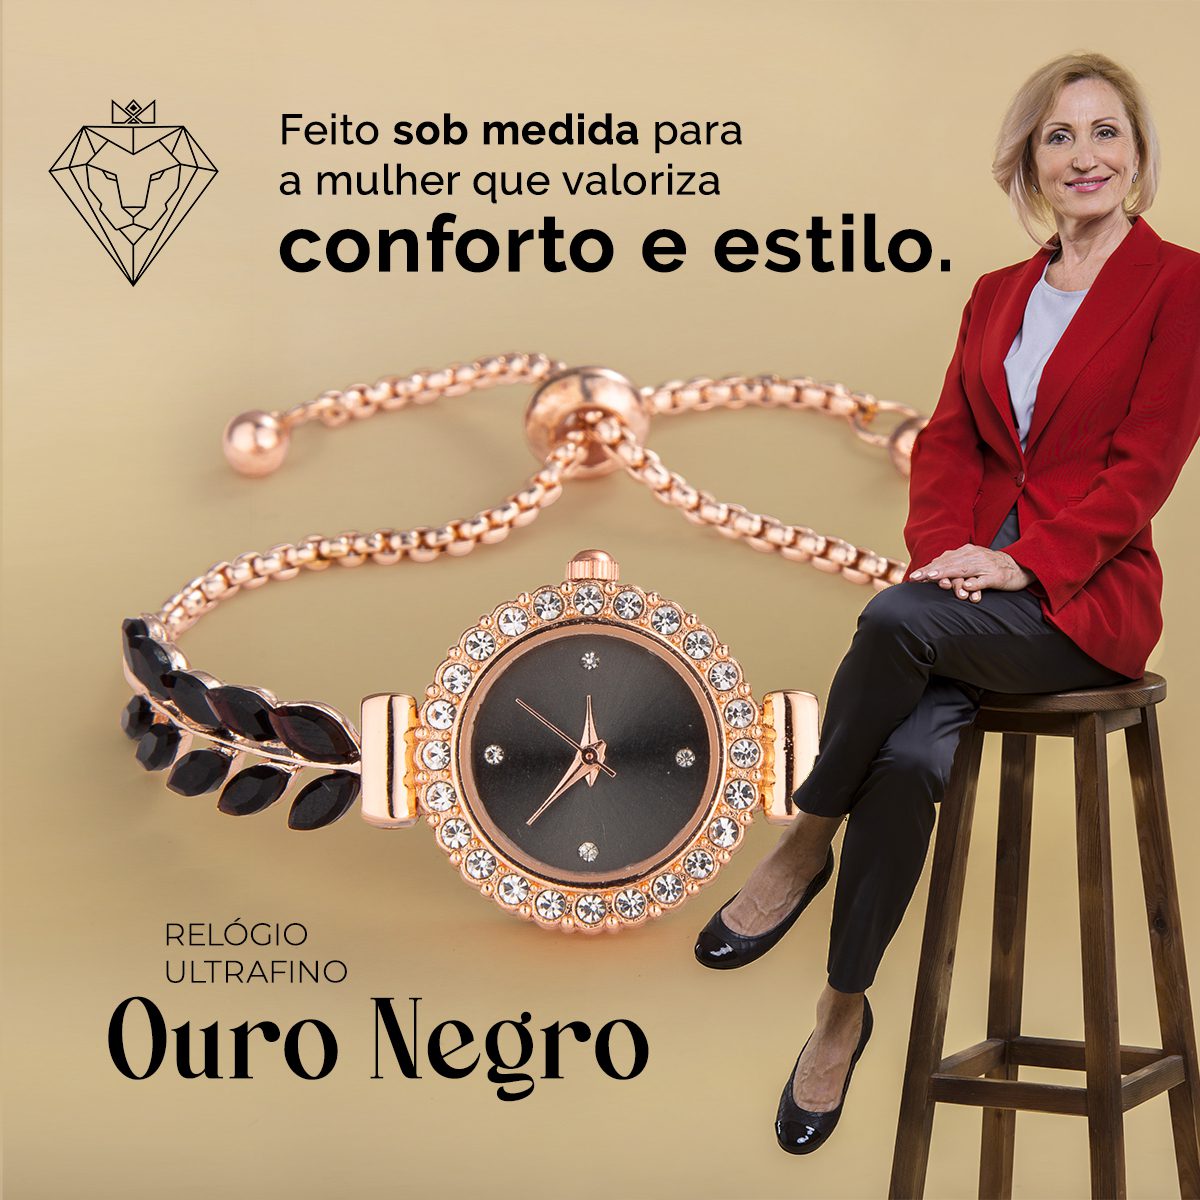 Relógio Ultrafino, Acessório Feminino Diferente, Look Elegante, Como Escolher o Acessório Certo, Relógio Pequeno, Formal